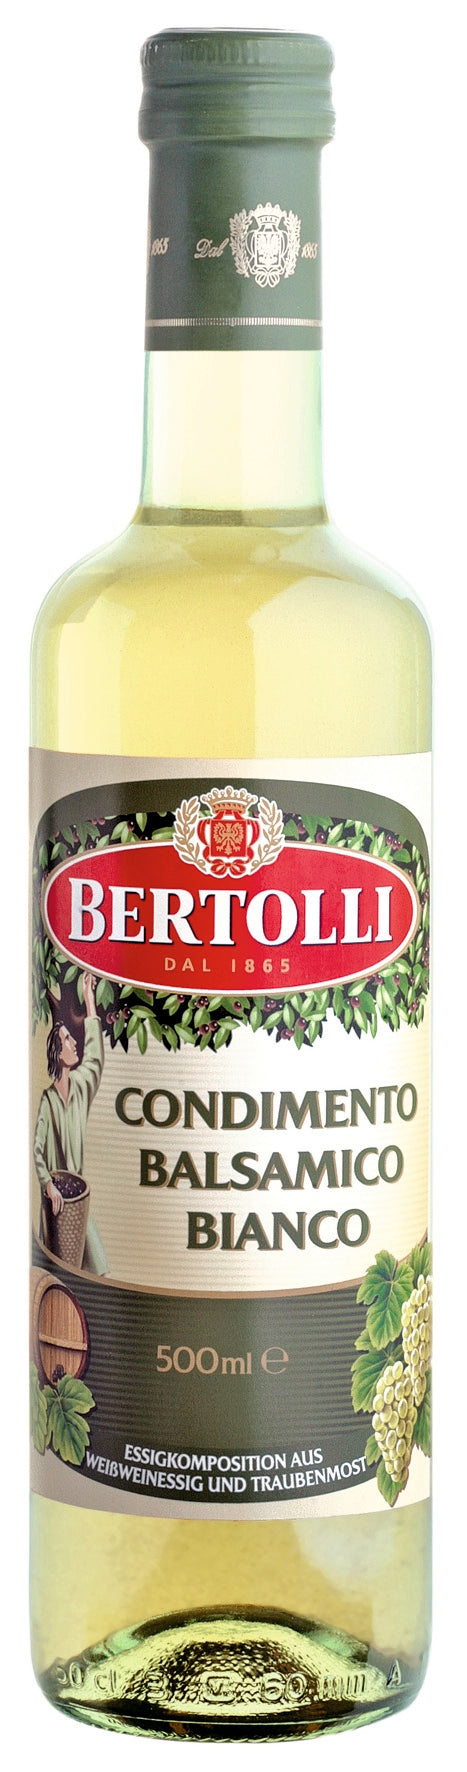 Bertolli Condimento Balsamico Bianco 500ml empfiehlt sich für die Liebhaber des fruchtig leichten Geschmacks